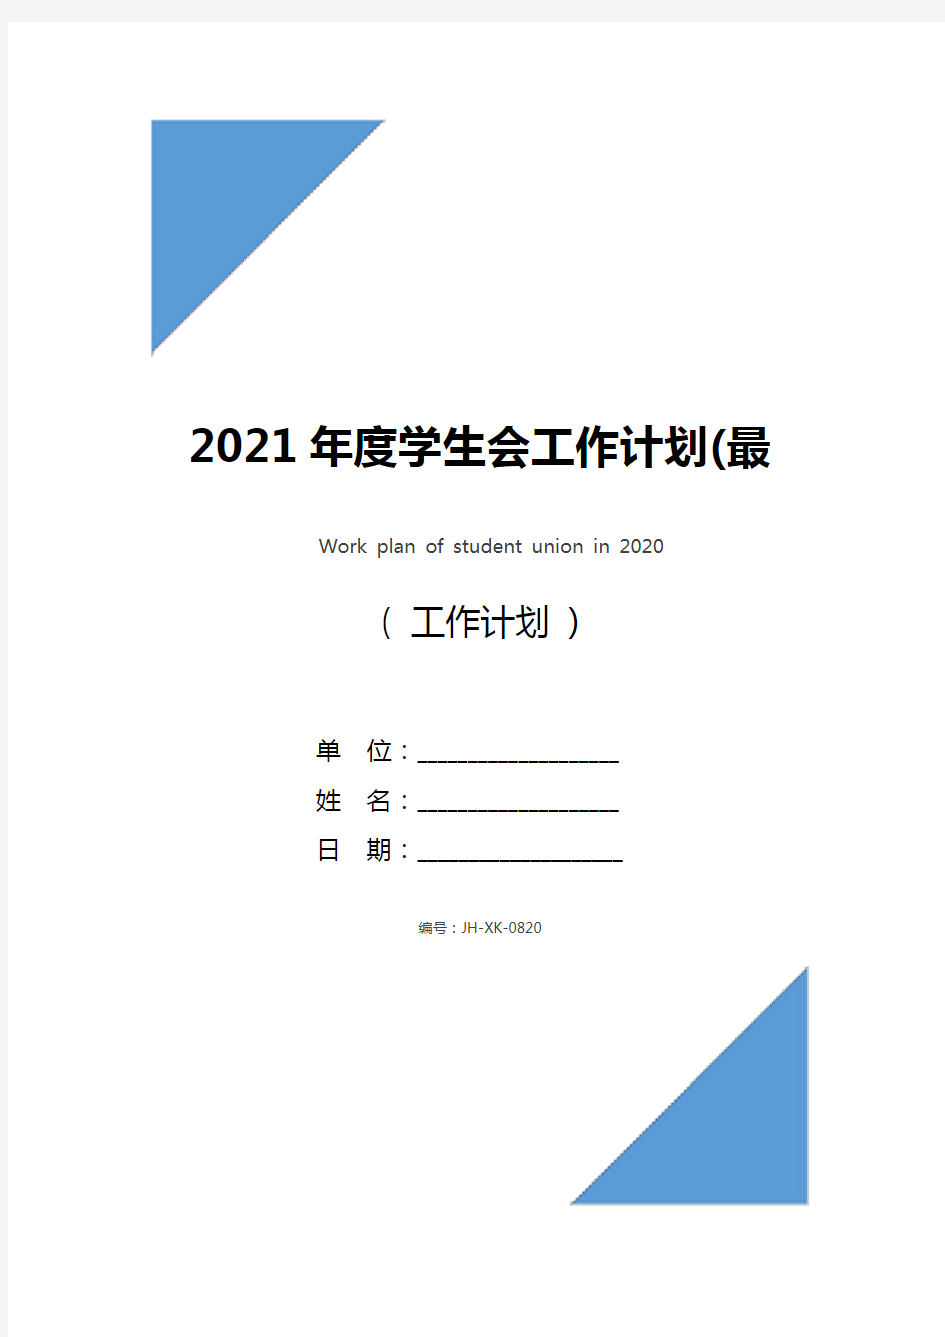 2021年度学生会工作计划(最新版)